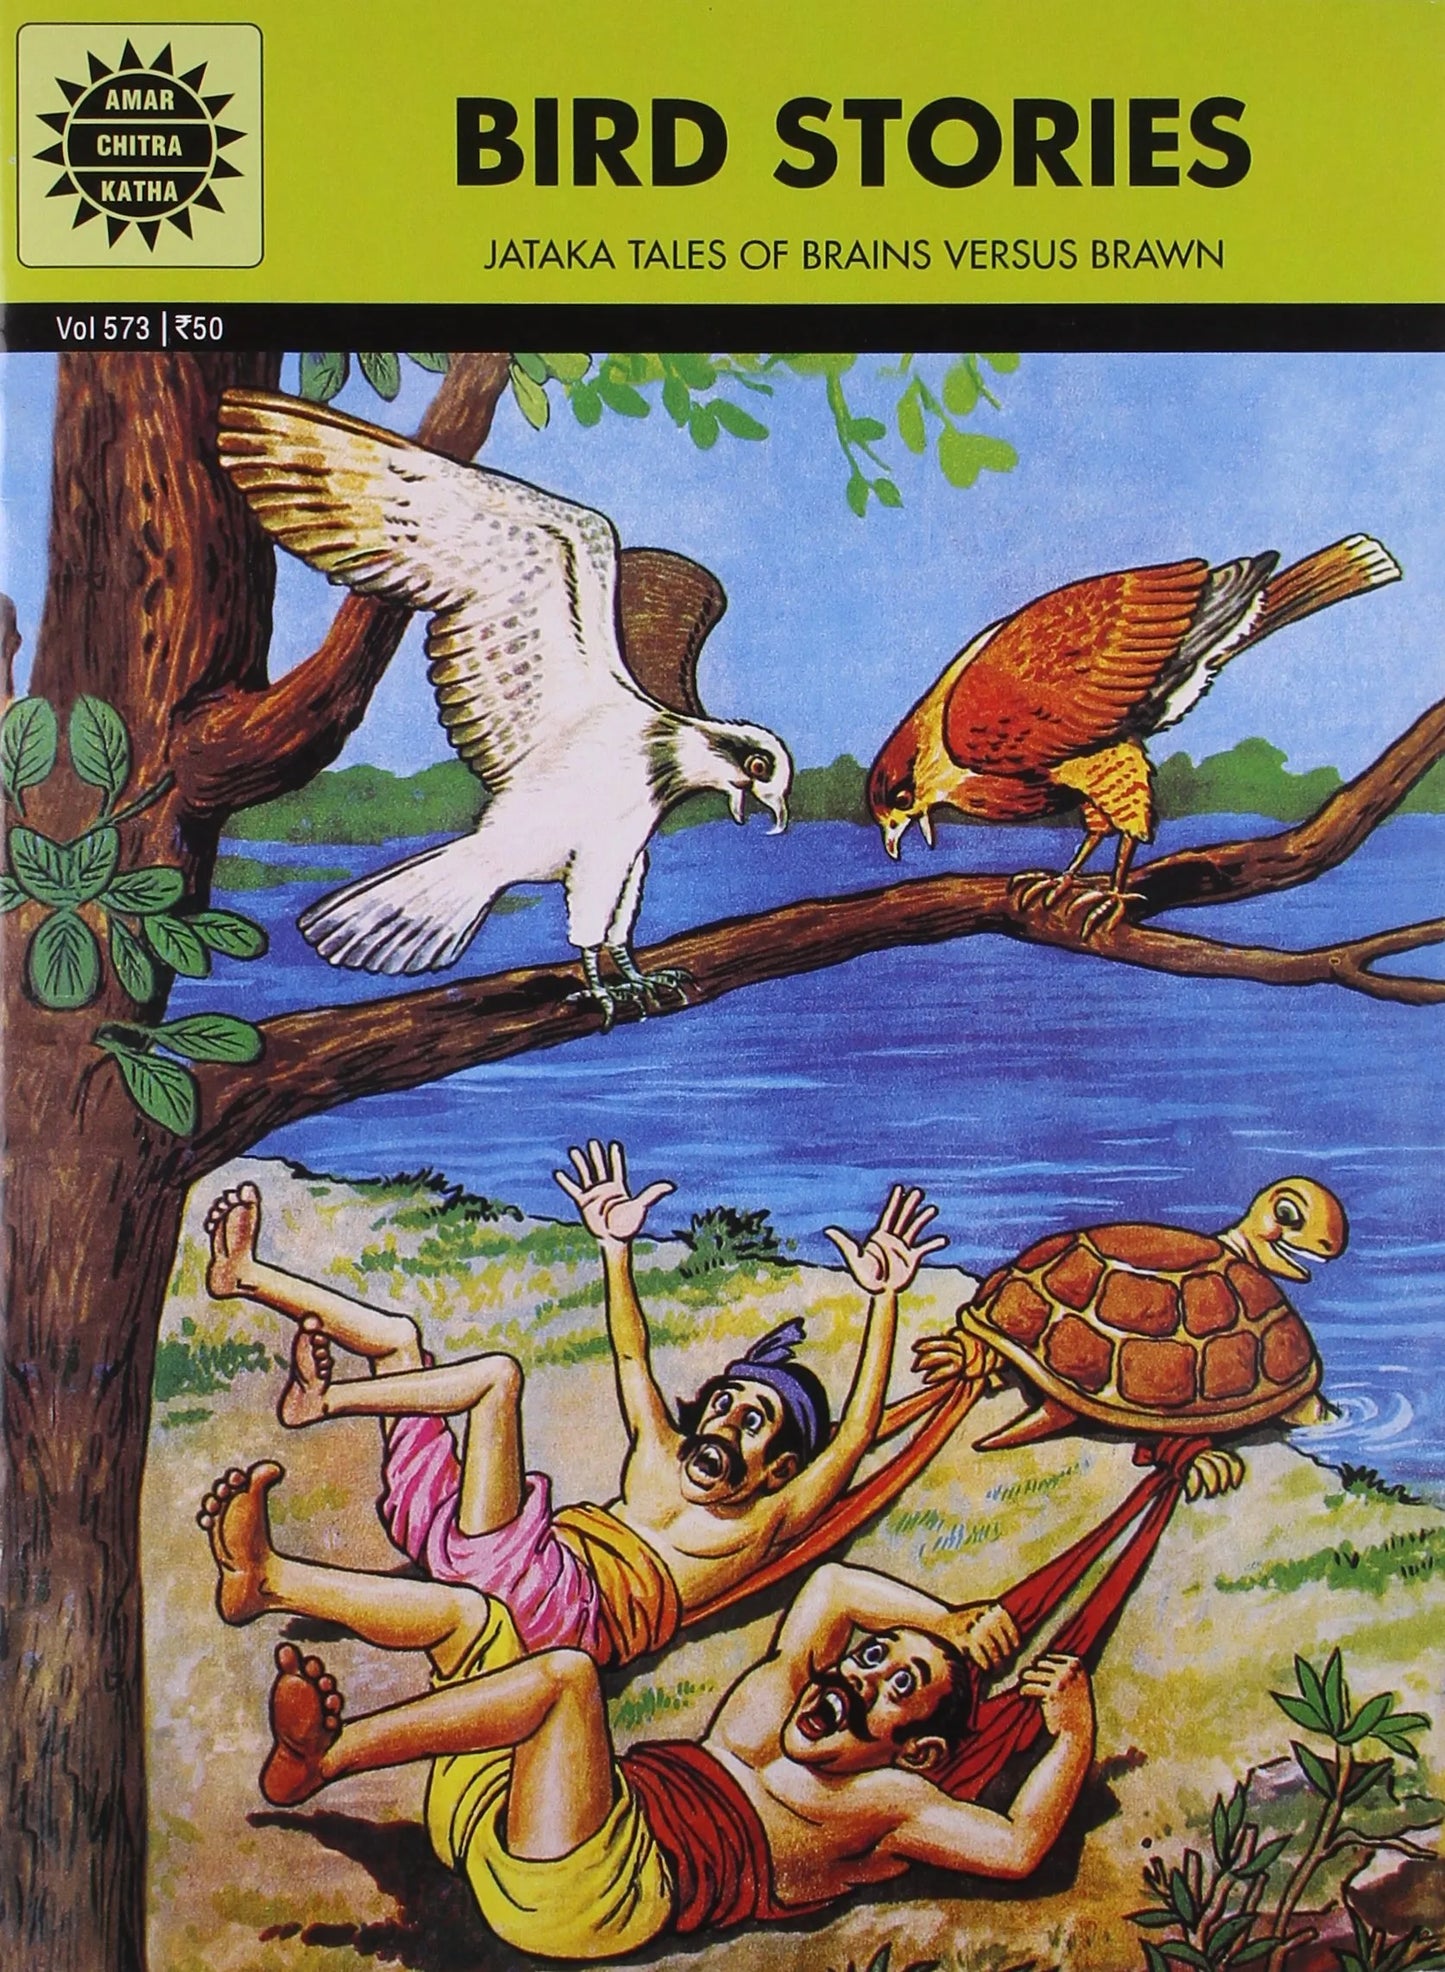 Amar Chitra Katha - Bird Stories - Jataka Tales of Brains versus Brawn